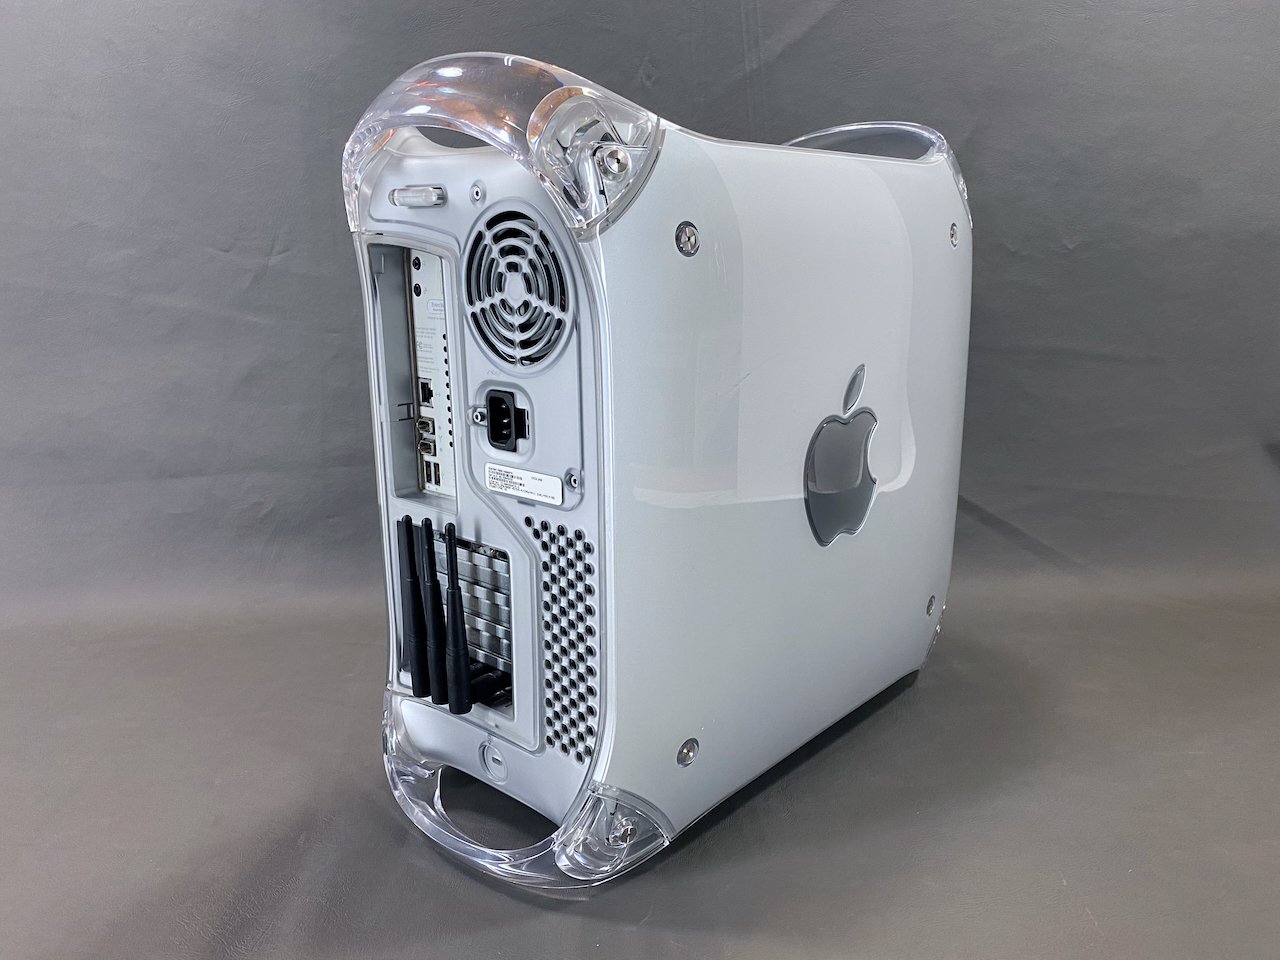 Power Mac G4 (Quicksilver) — mac27.net